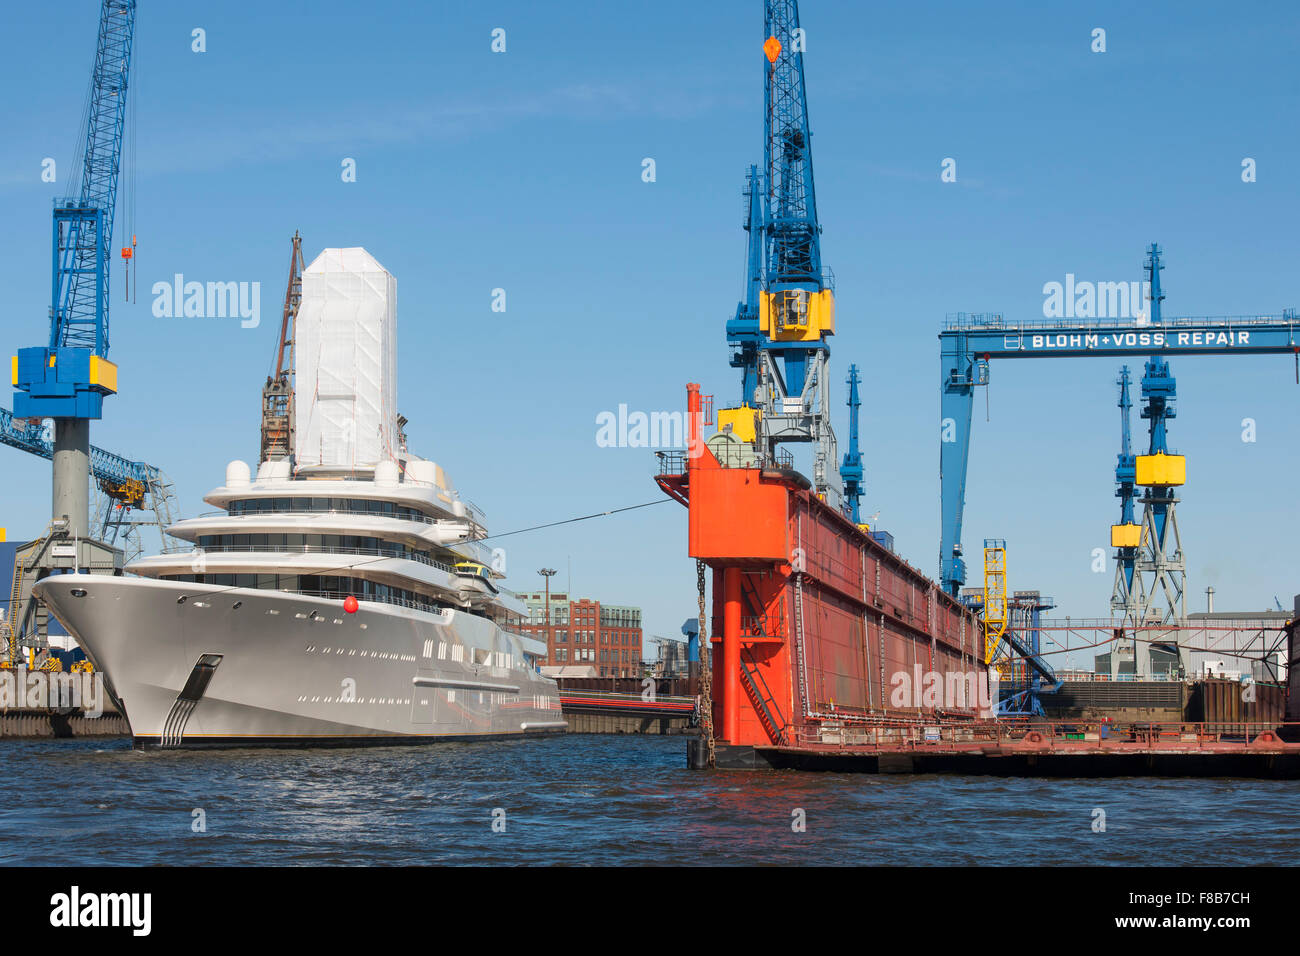 Deutschland, Hamburg, Hamburger Hafen, Yacht Eclipse des russischen Milliardärs Roman Abramowitsch neben dem Trockendock der Fa. Stock Photo